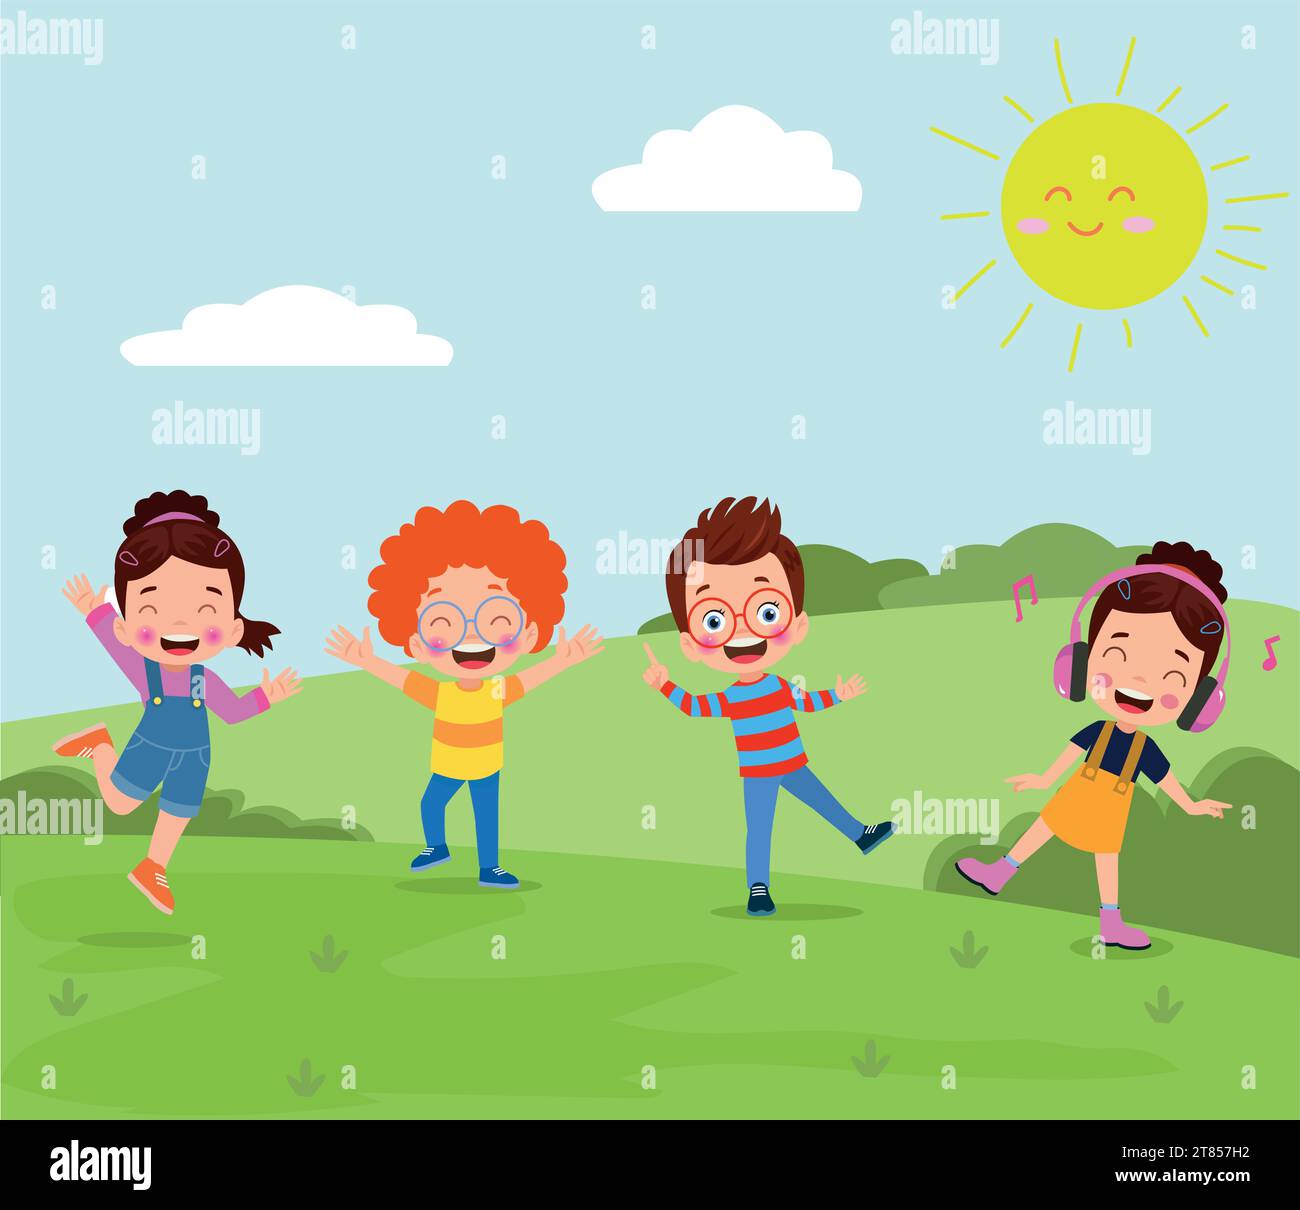 Bambini felici che giocano nel parco. Illustrazione vettoriale di bambini felici che si divertono all'aperto. Illustrazione Vettoriale